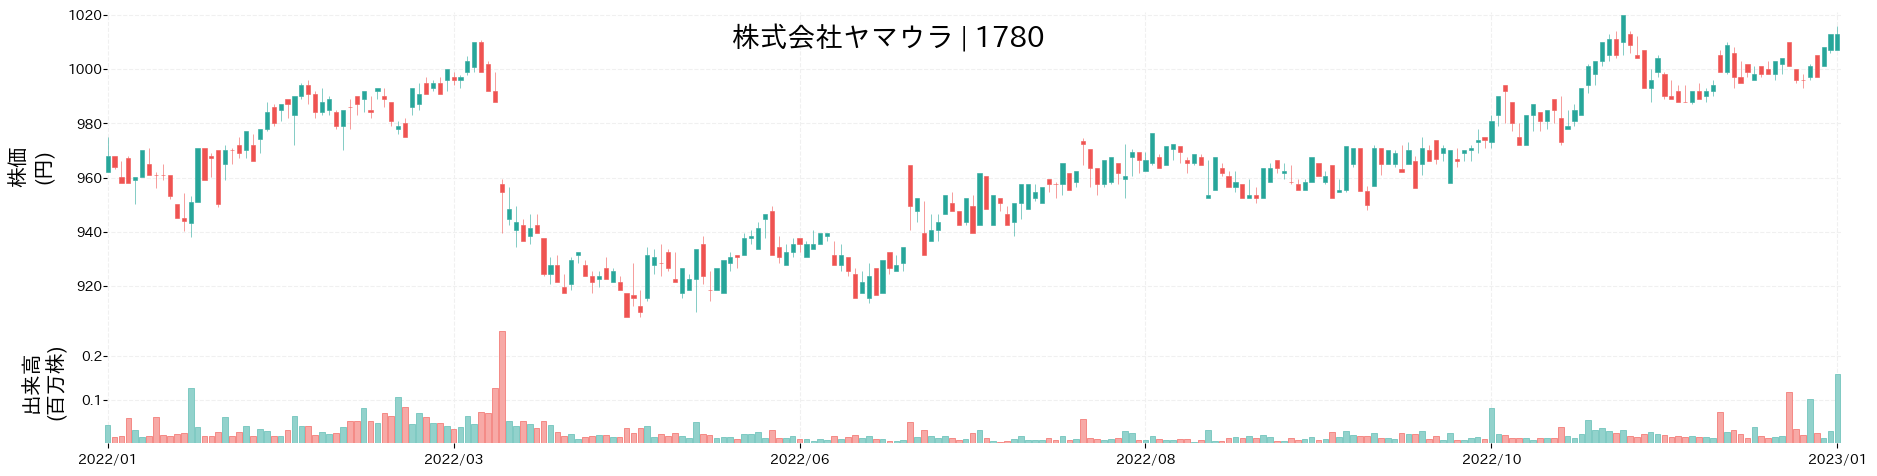 ヤマウラの株価推移(2022)